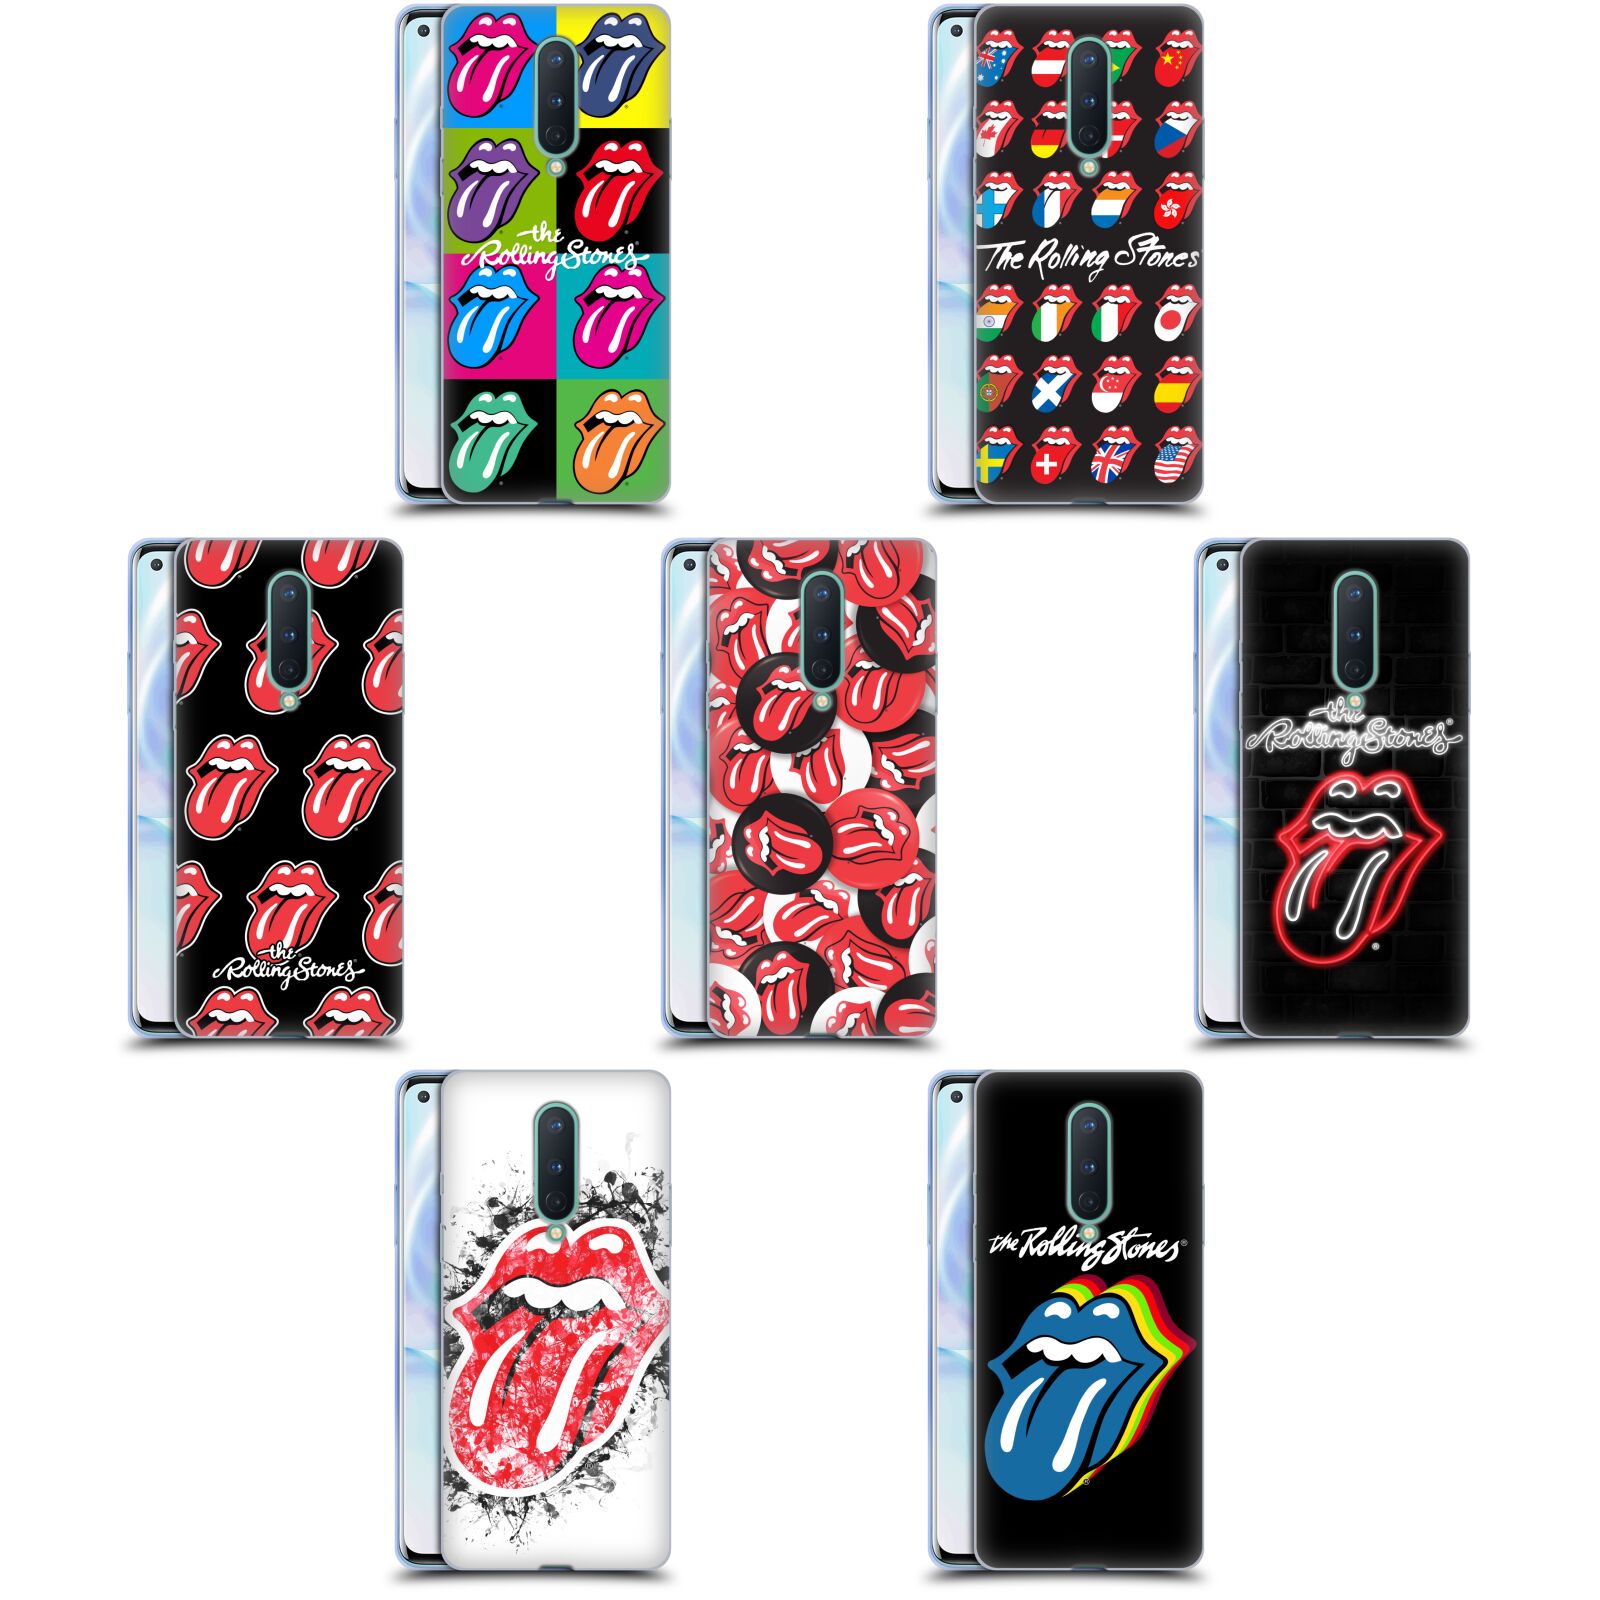 公式ライセンス The Rolling Stones リックス・コレクション ソフトジェルケース Google Oneplus 電話 ザ・ローリング・ストーンズ ローリング・ストーンズ ローリング ストーンズ ベロ・マーク